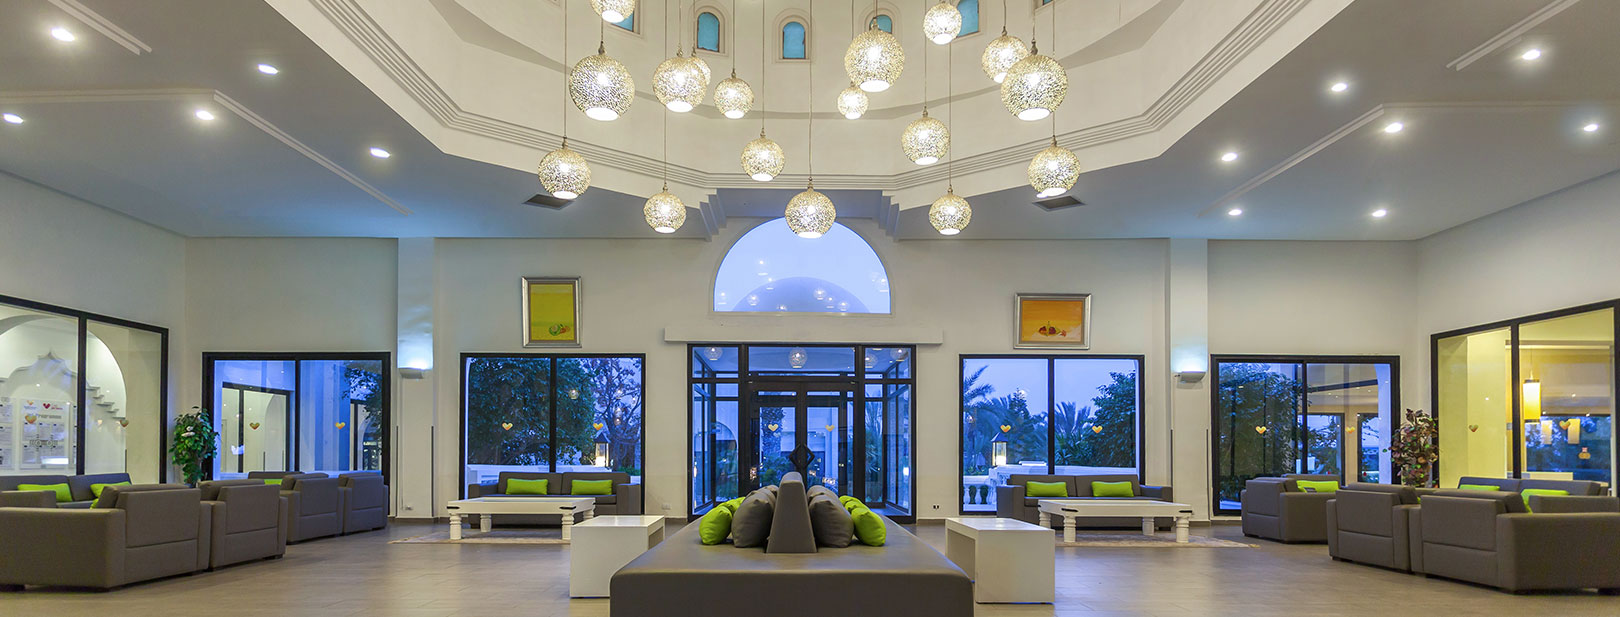 Tunisie - Djerba - Hôtel Djerba Aqua Resort 4* - Bagage inclus